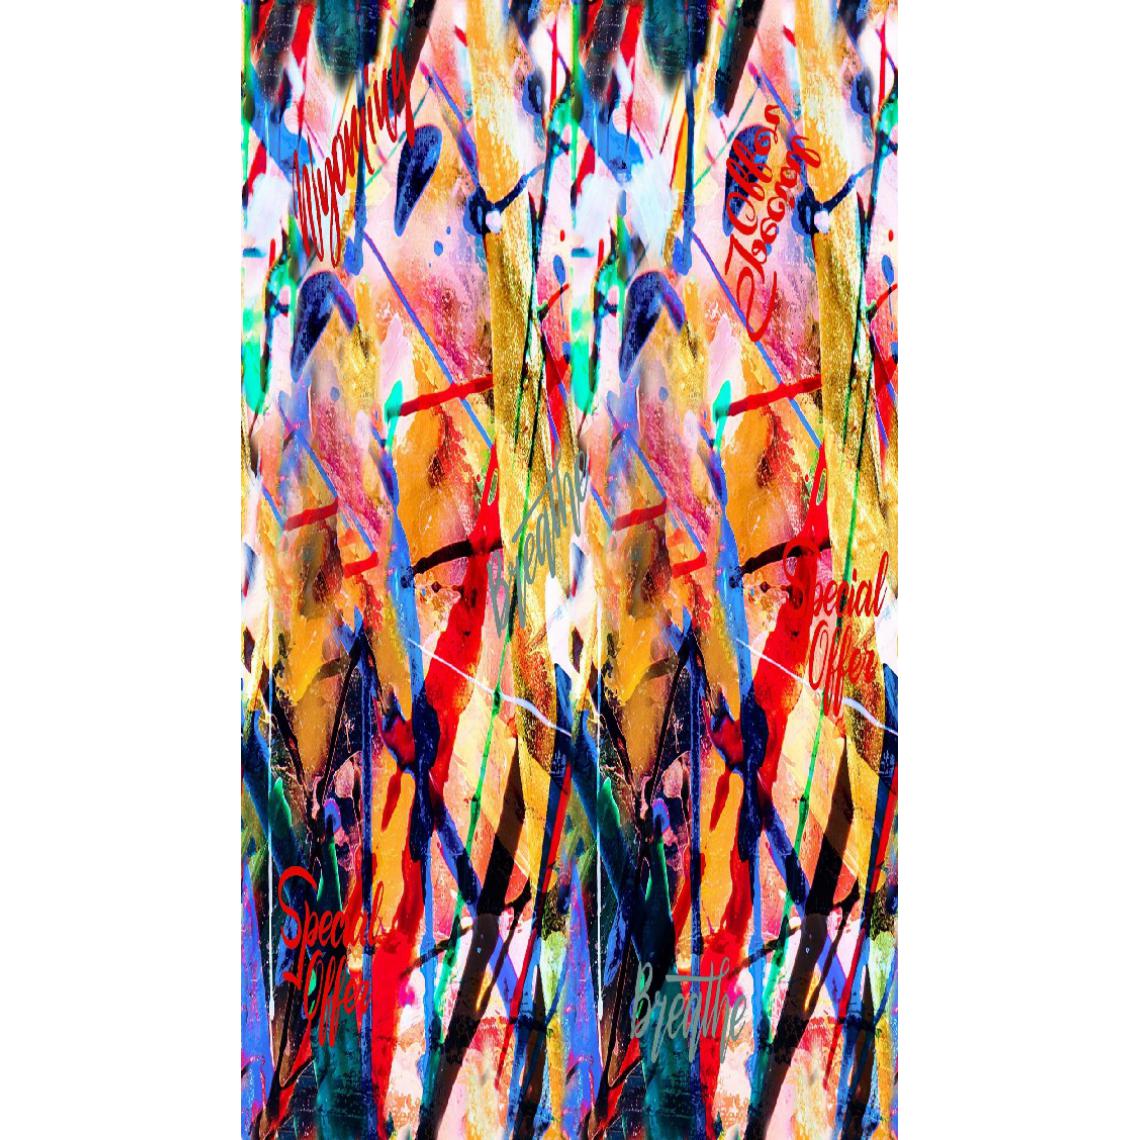 Homemania - HOMEMANIA Tapis Imprimé Crayon 1 - Résumé - Décoration de Maison - antidérapants - Pour Salon, séjour, chambre à coucher - Multicolore en Polyester, Coton, 100 x 200 cm - Tapis